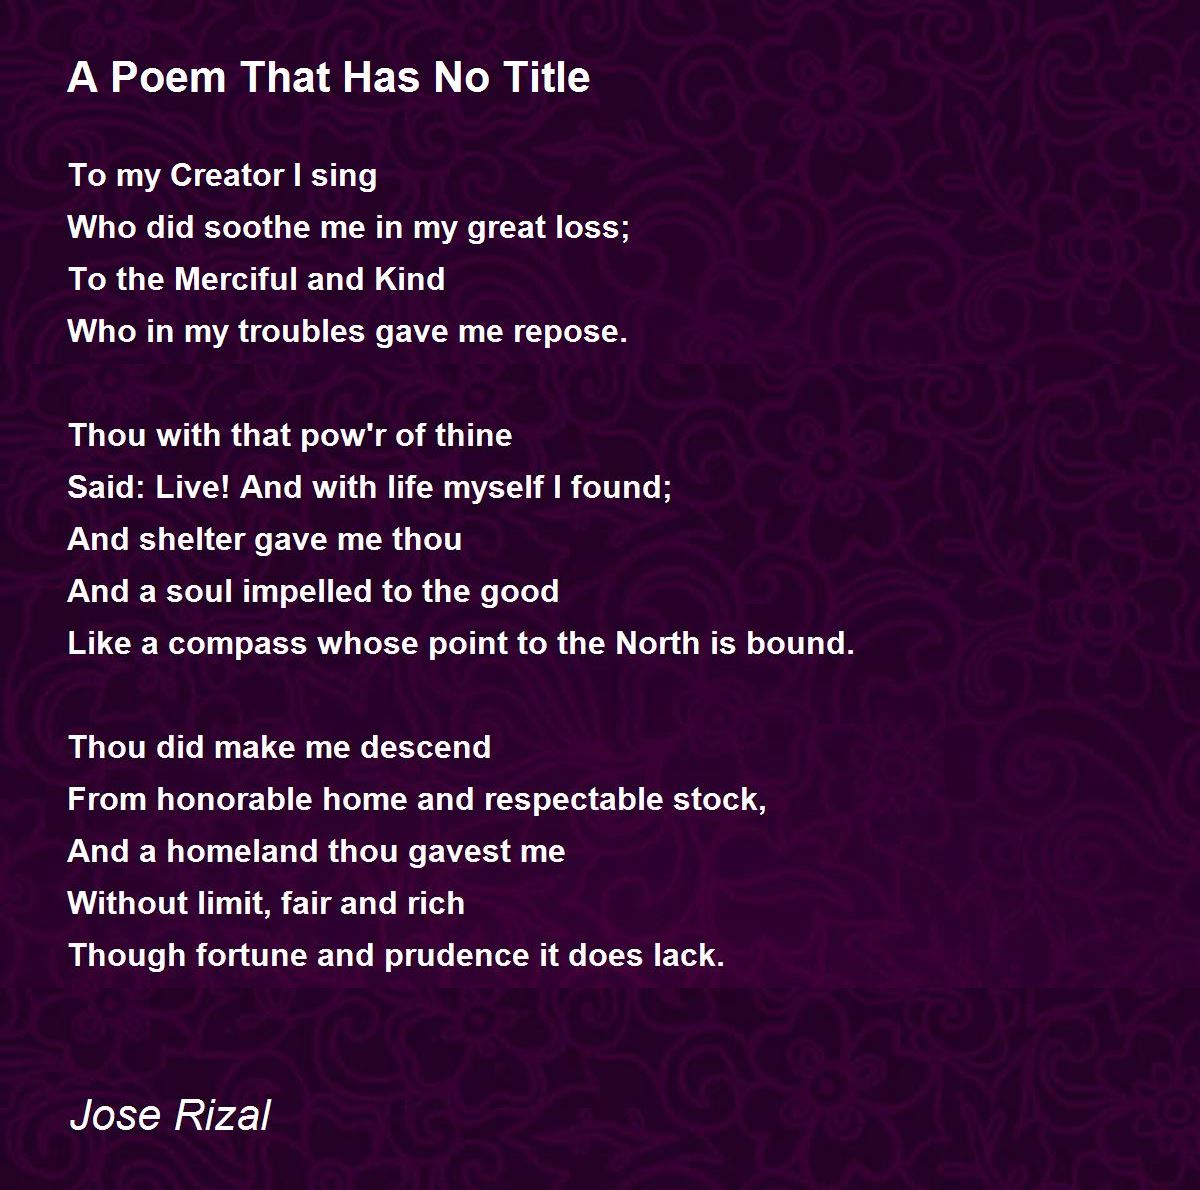 Jose Rizal Poems Written in Ateneo